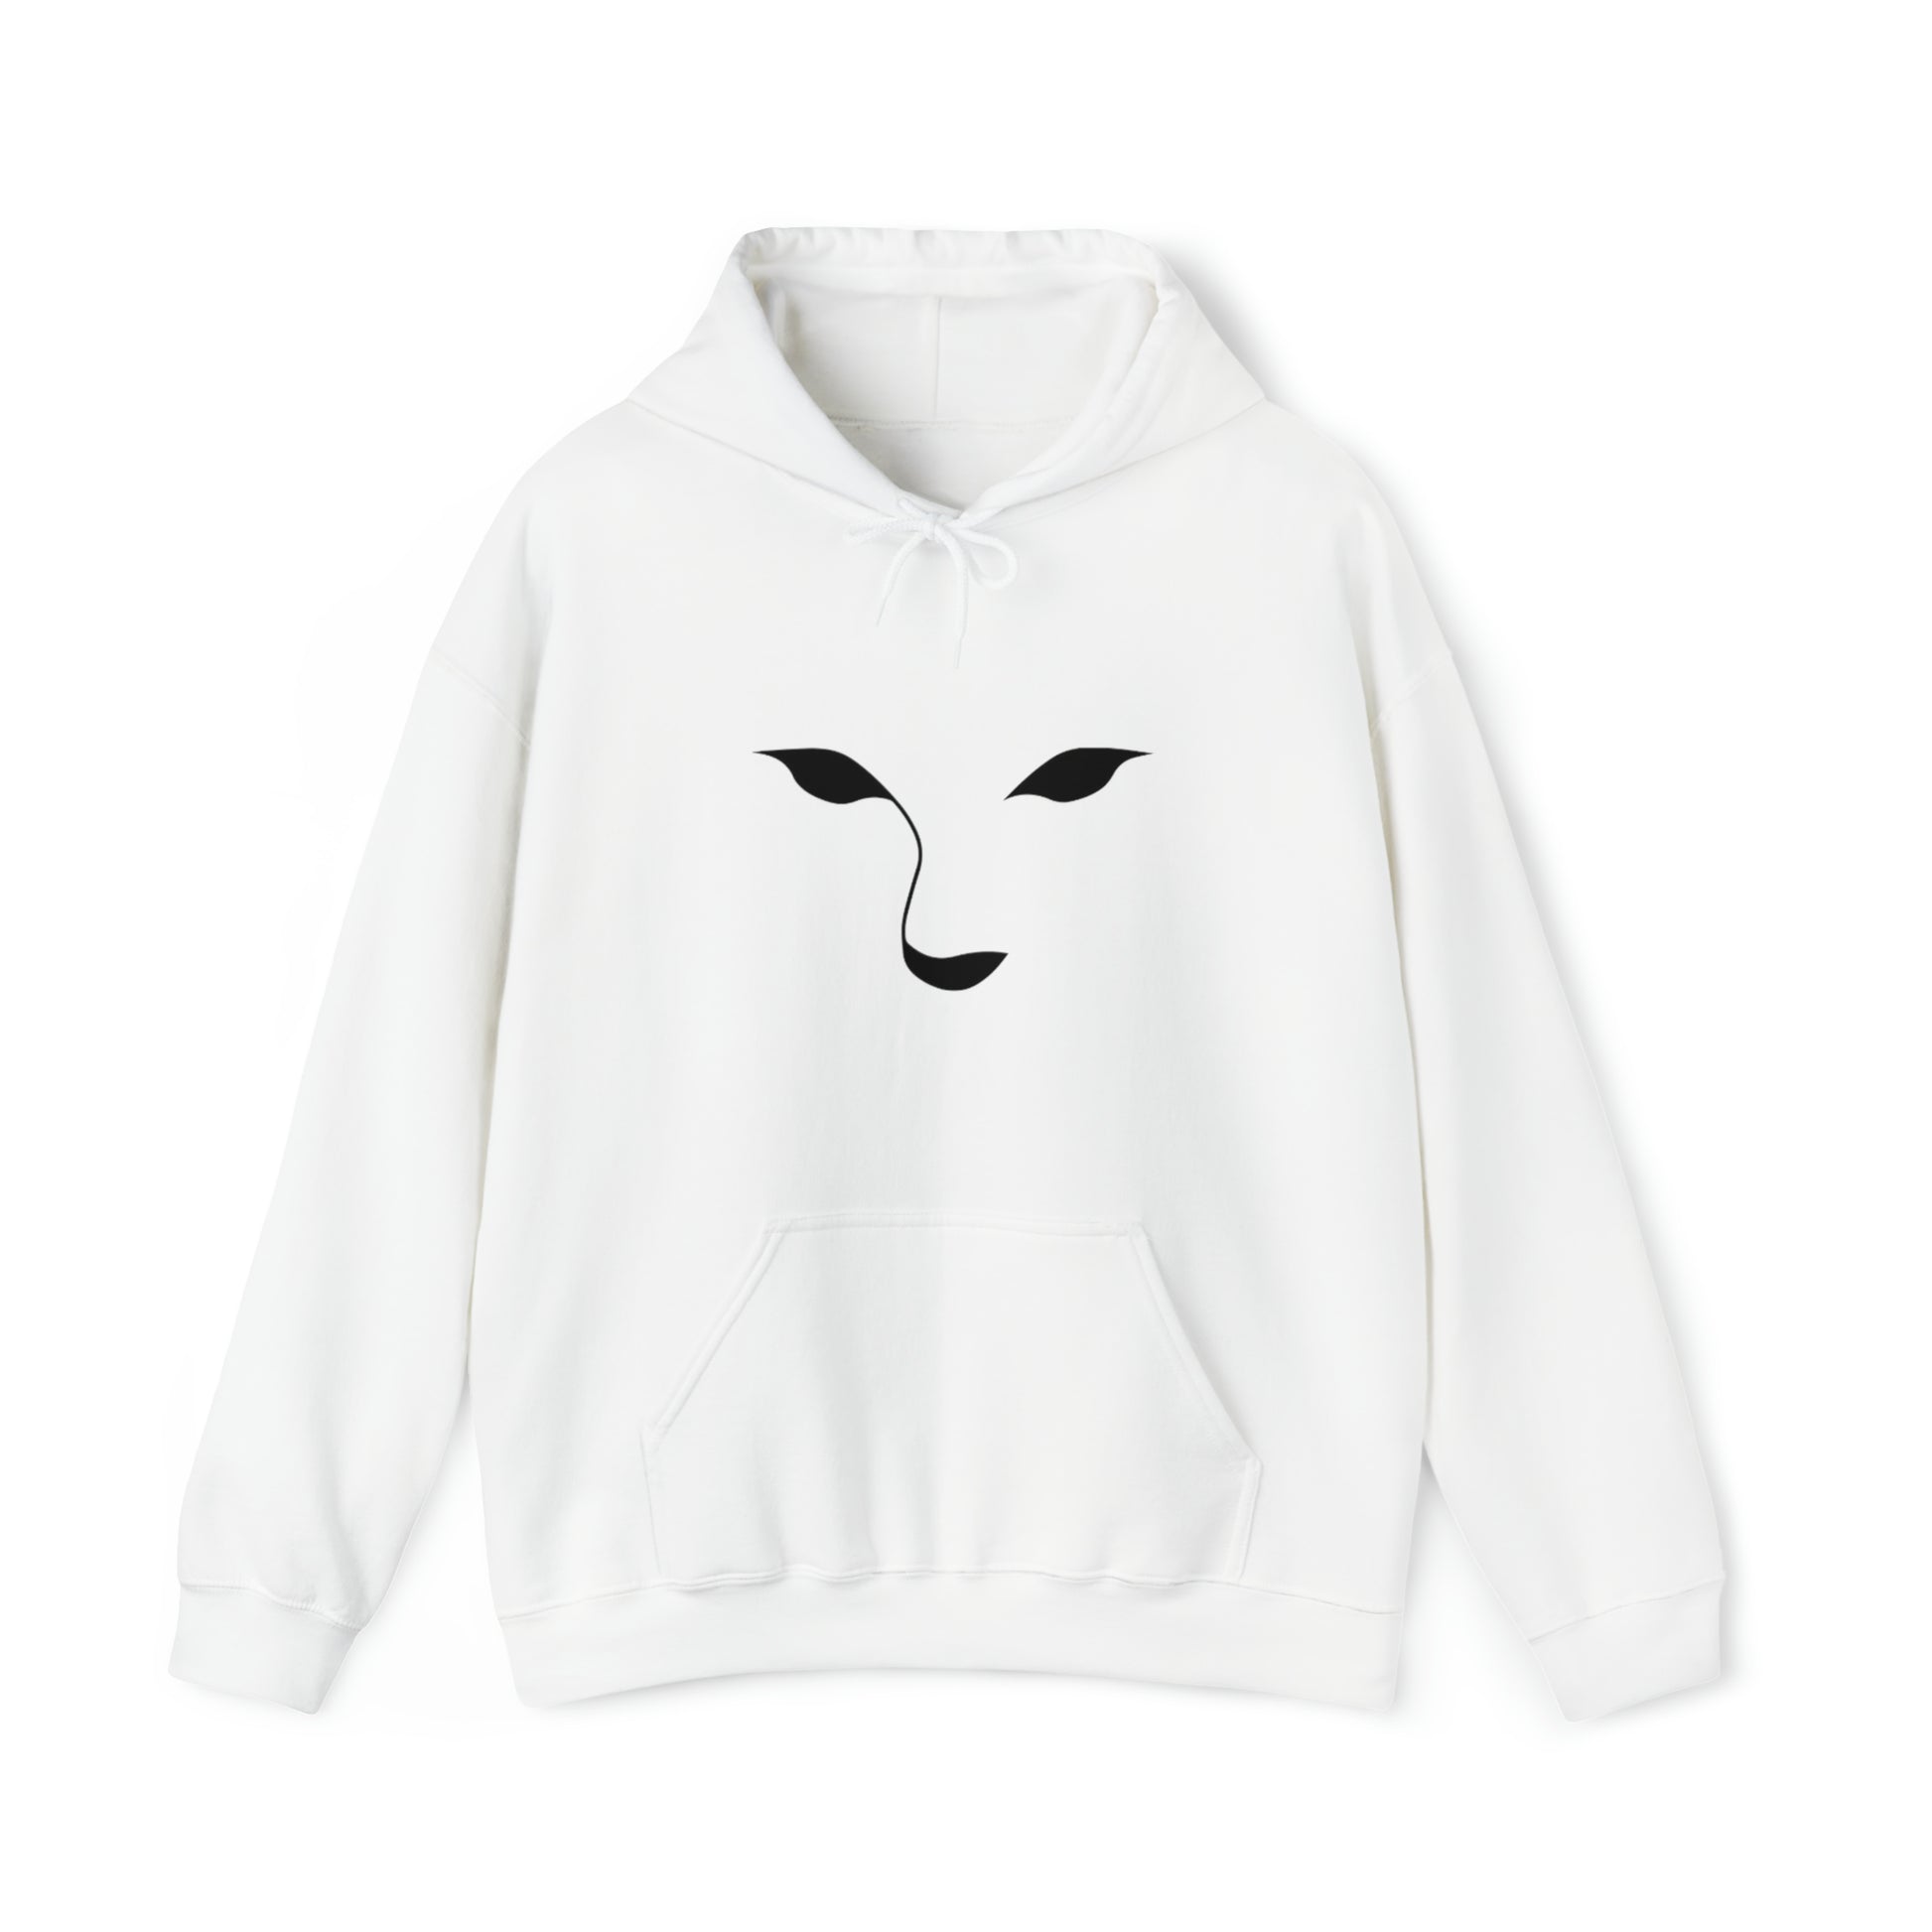 Chai Couture - Unisex Heavy Blend™ Hooded Sweatshirt - White - Daniel's Chai Bar